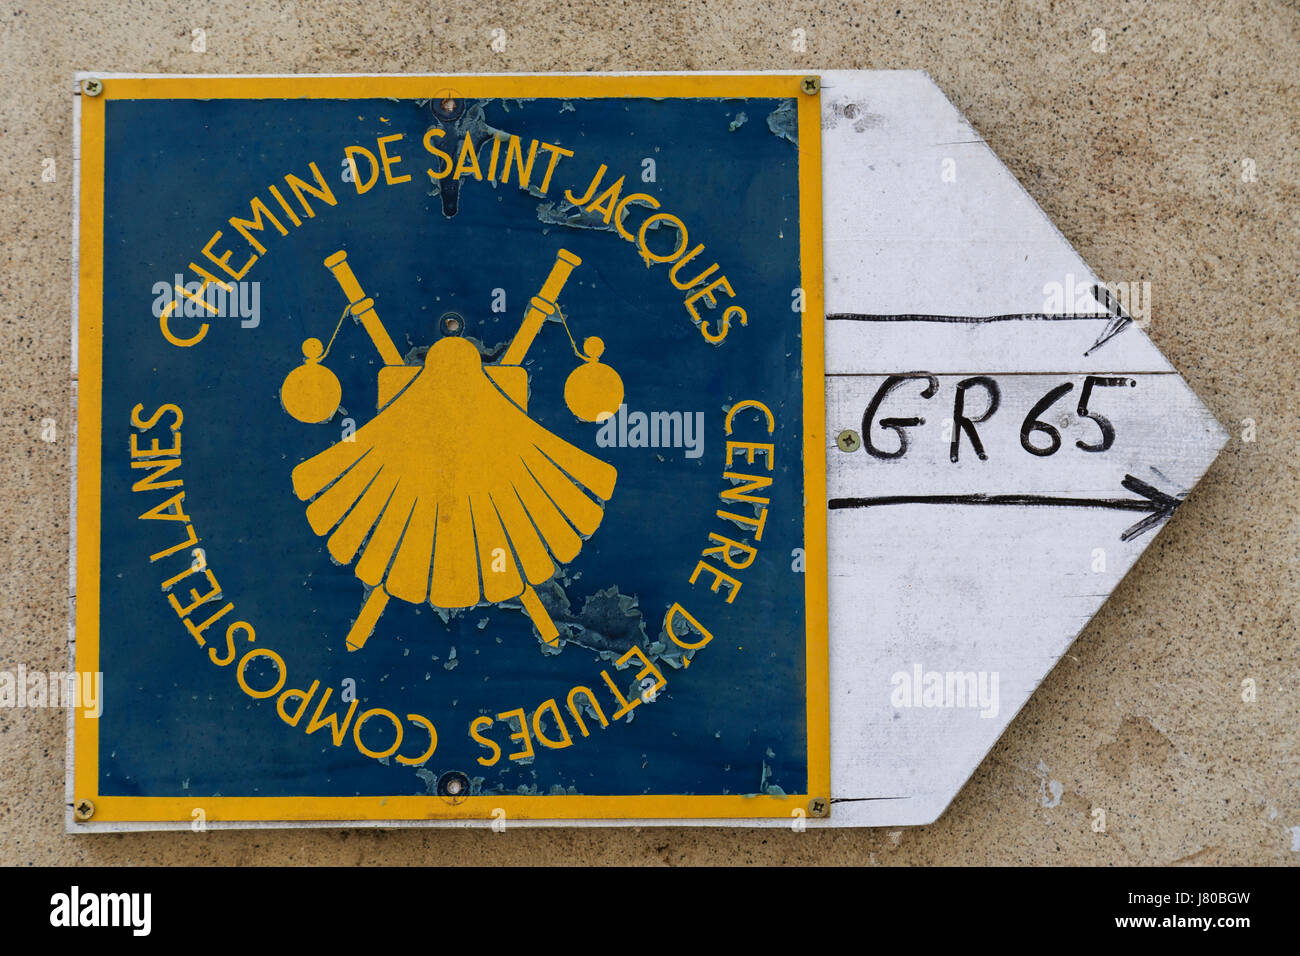 France, Gers, Larressingle, labelled Les Plus Beaux Villages de France,sign for the way to Saint Jacques de Compostela Stock Photo